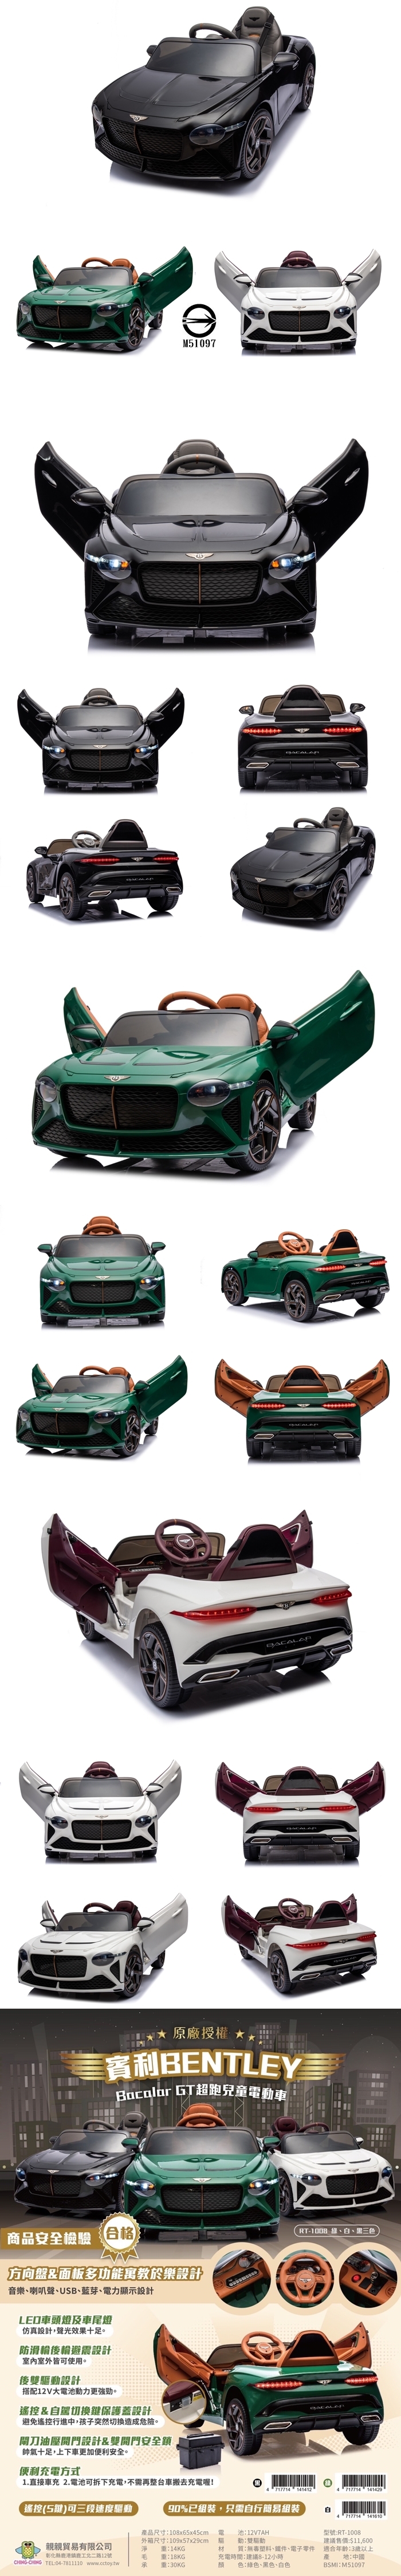 CHING-CHING親親-賓利Bacalar-GT超跑兒童電動車(黑色/綠色/白色)RT-1008